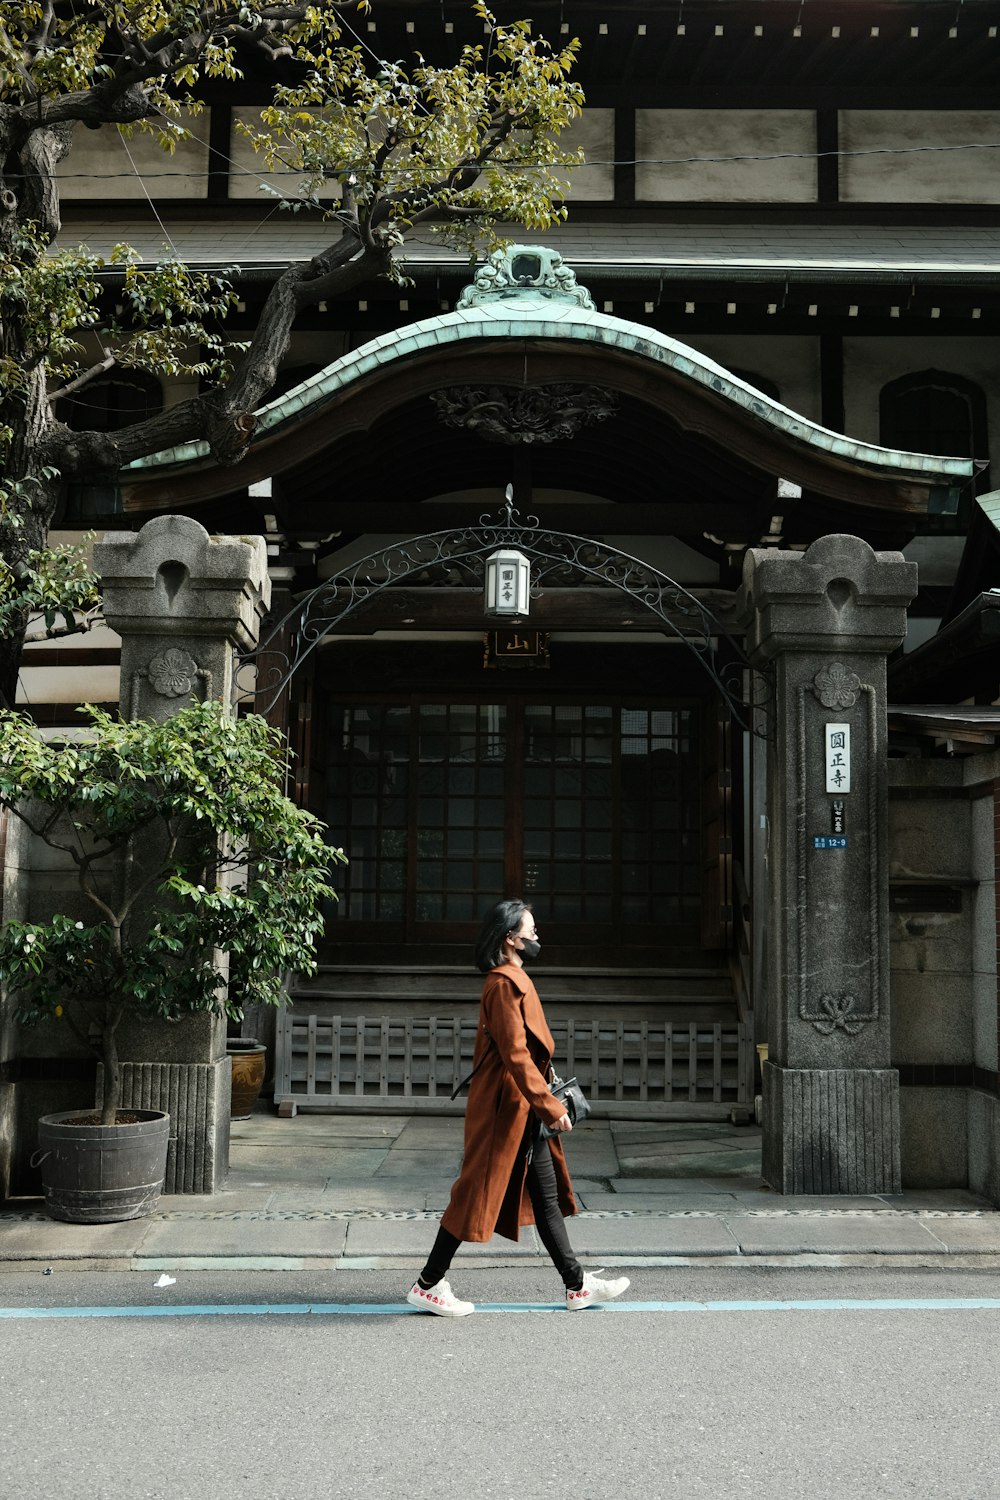 Una donna che cammina attraverso una strada di fronte a un edificio